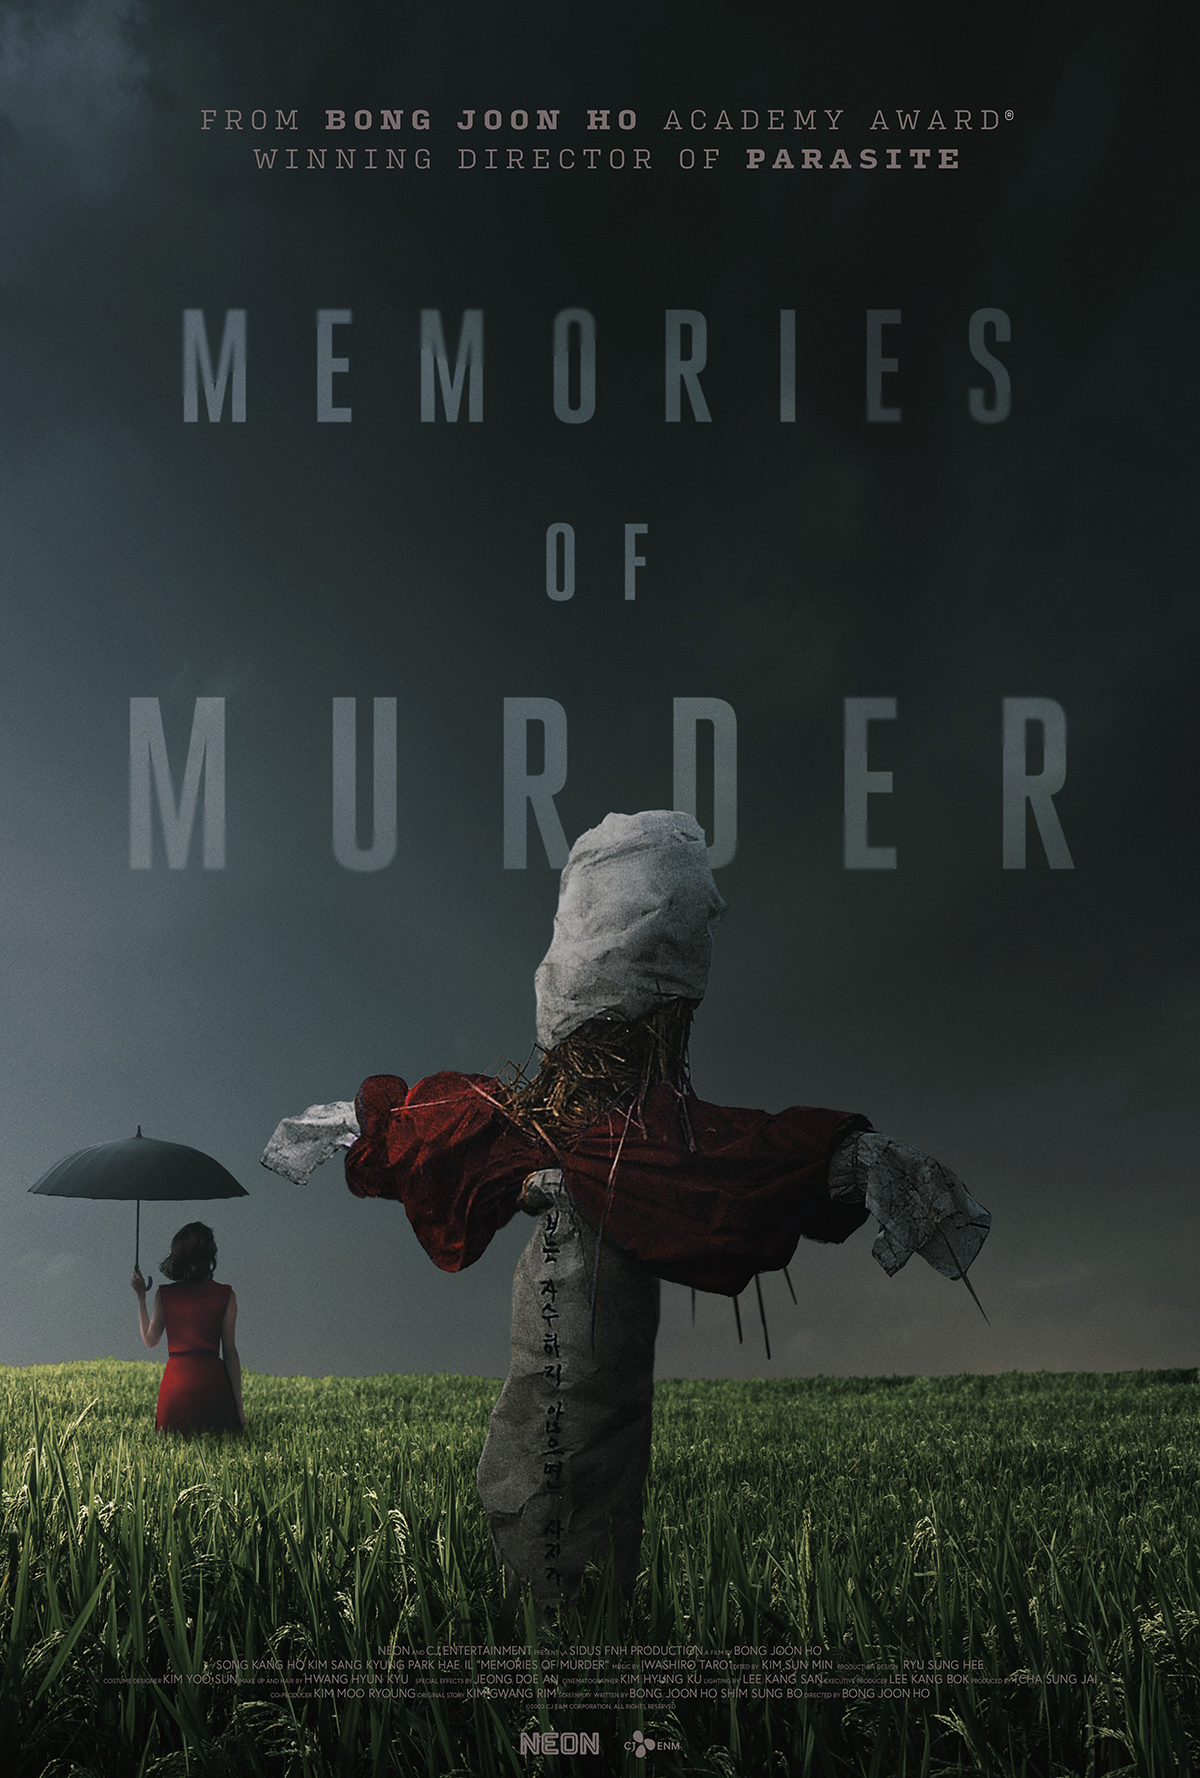 Bong Joon Ho's Memories of Murder